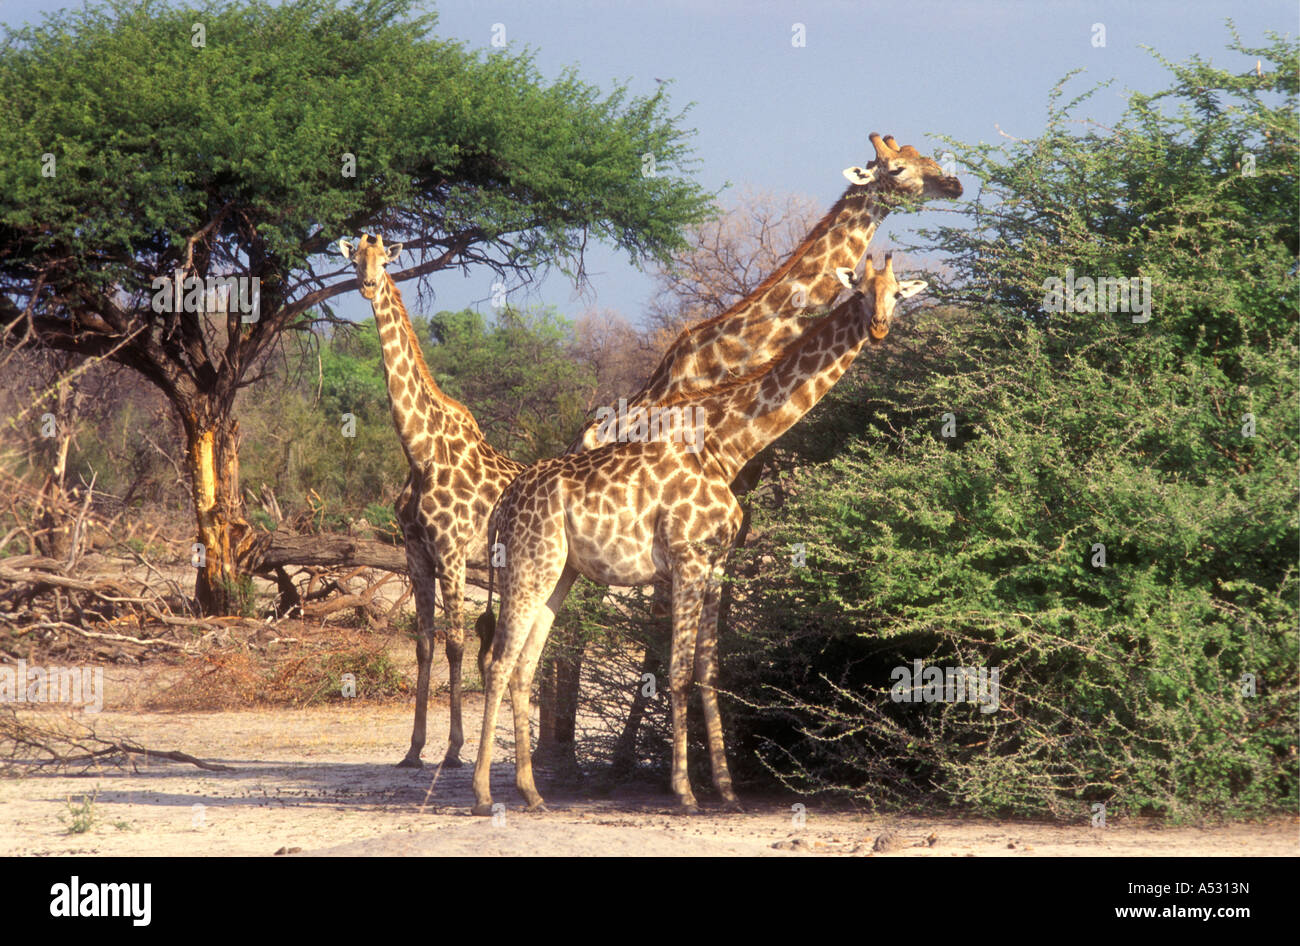 Girafe commun naviguant sur acacia arbres Parc National de Chobe au Botswana Banque D'Images